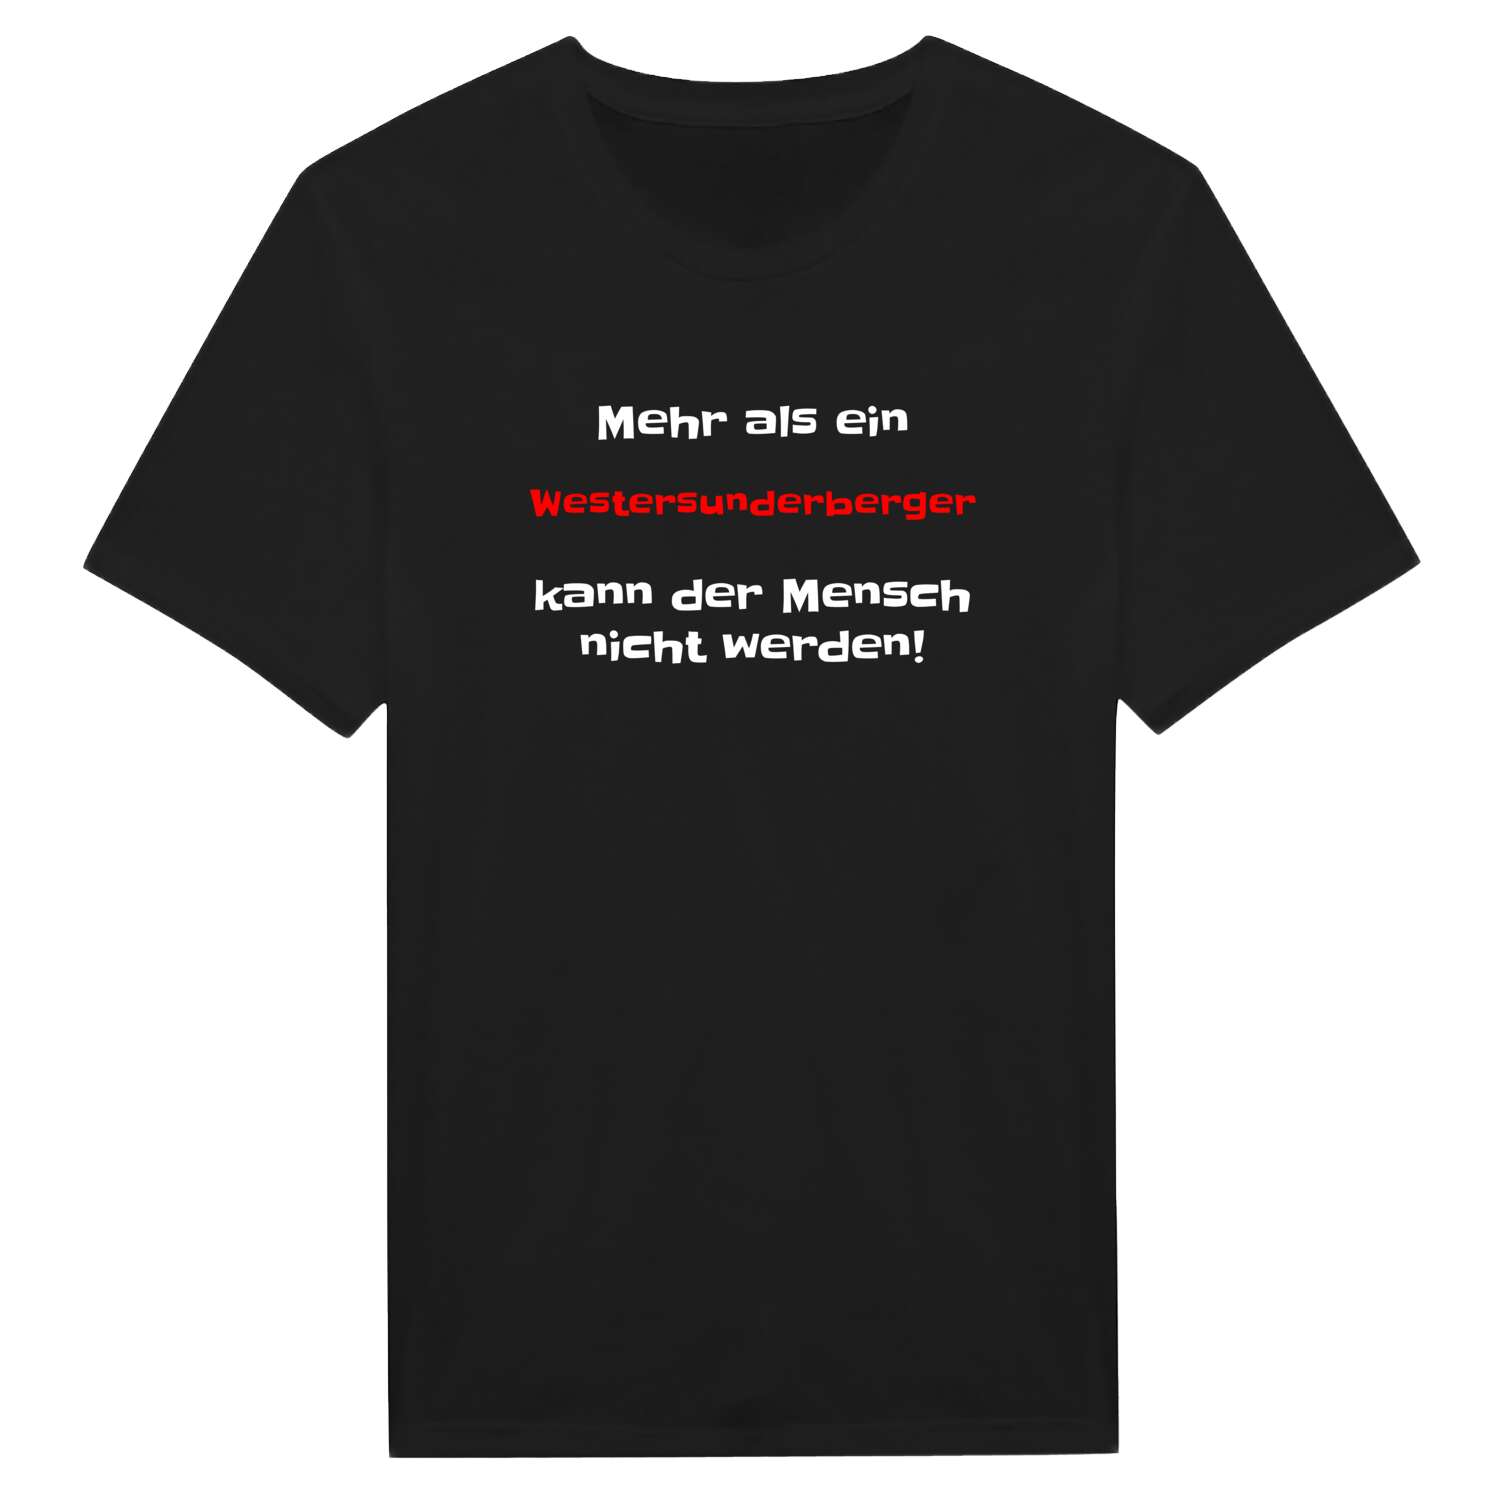 Westersunderberg T-Shirt »Mehr als ein«